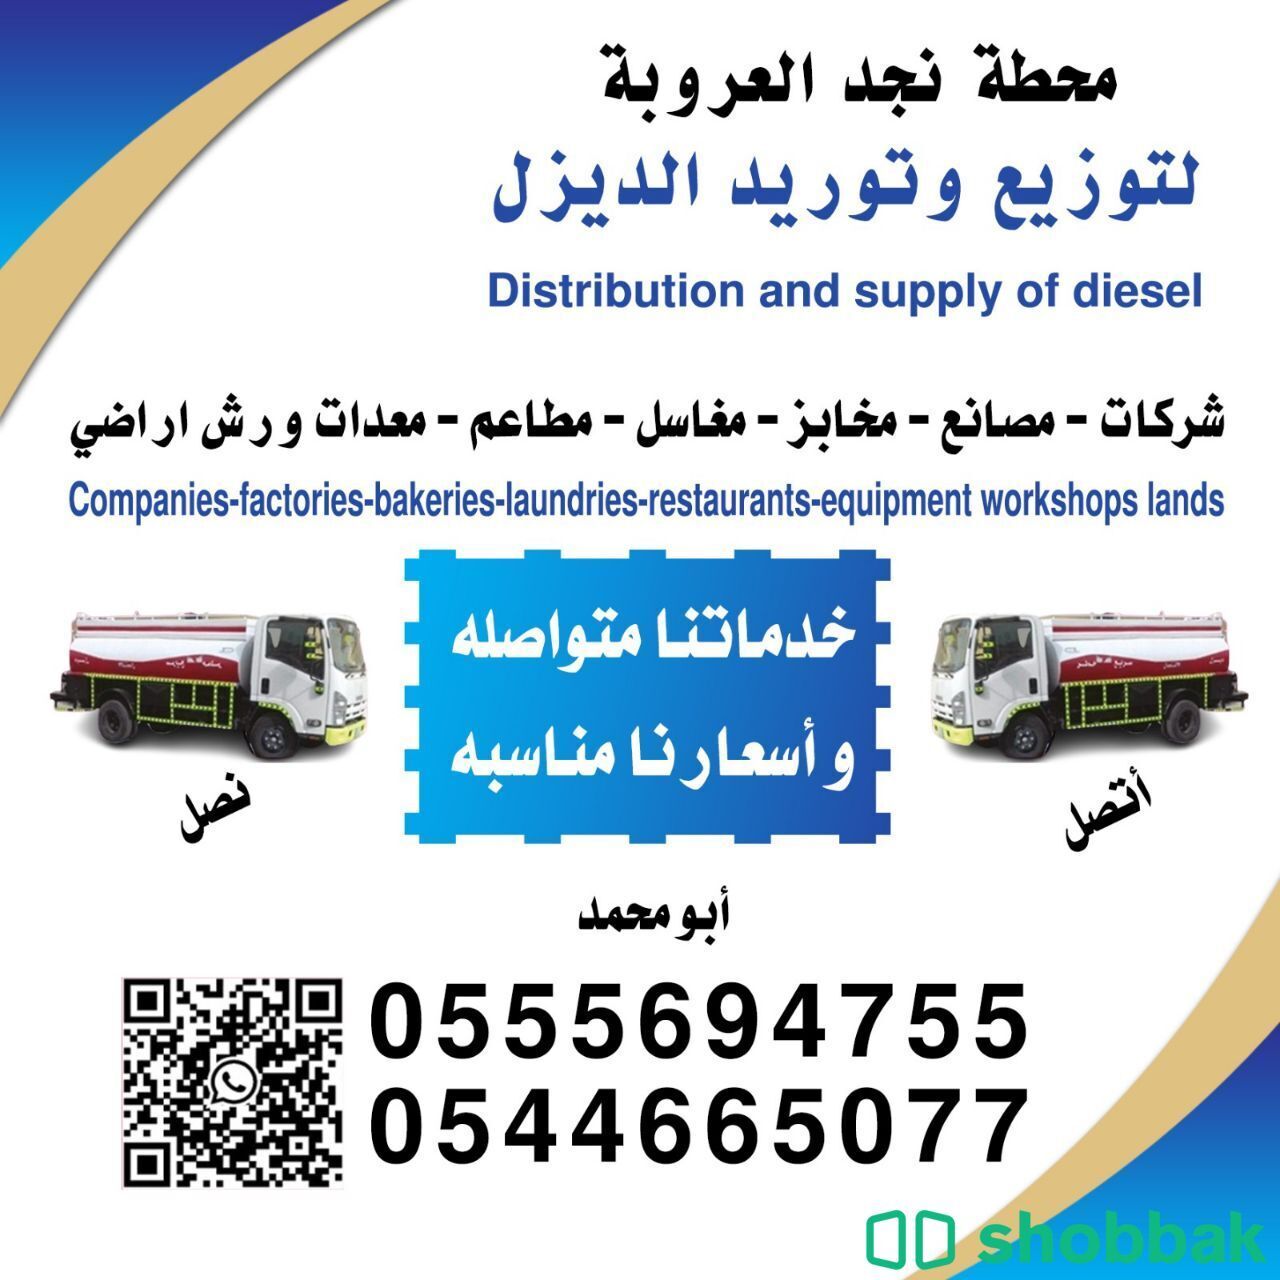 توصيل الديزل في  الرياض توصيل ديزل
خدماتنا
توصيل الديزل للمشاريع والمصانع شباك السعودية